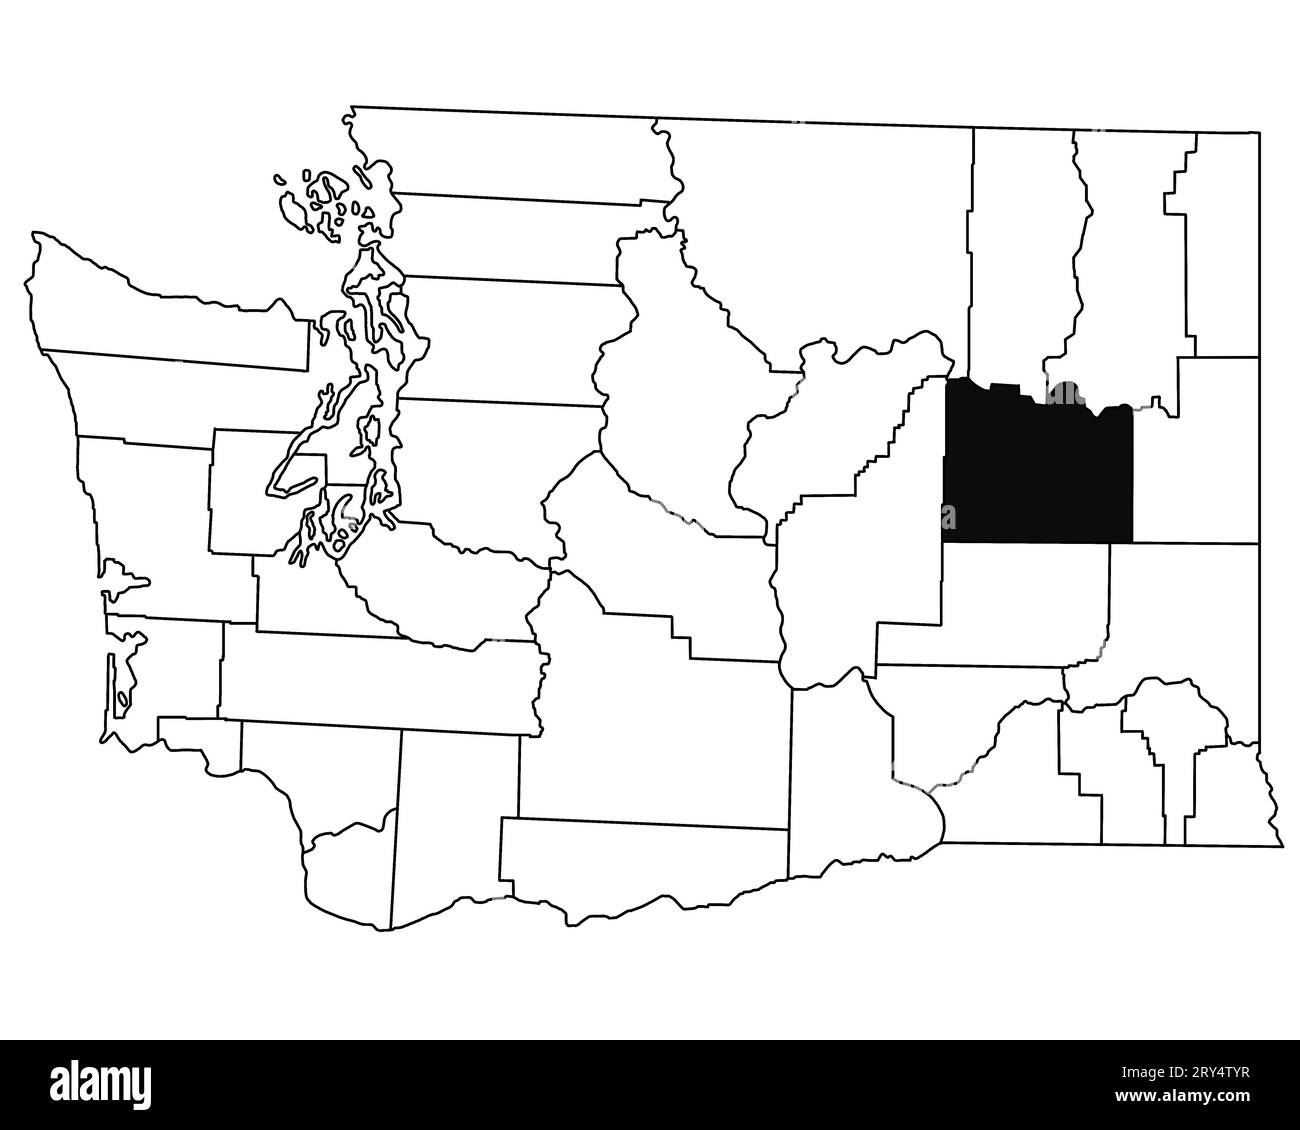 Mappa della contea di Lincoln nello stato di Washington DC su sfondo bianco. Mappa singola della contea evidenziata dal colore nero sulla mappa DI WASHINGTON. STATI UNITI, STATI UNITI Foto Stock